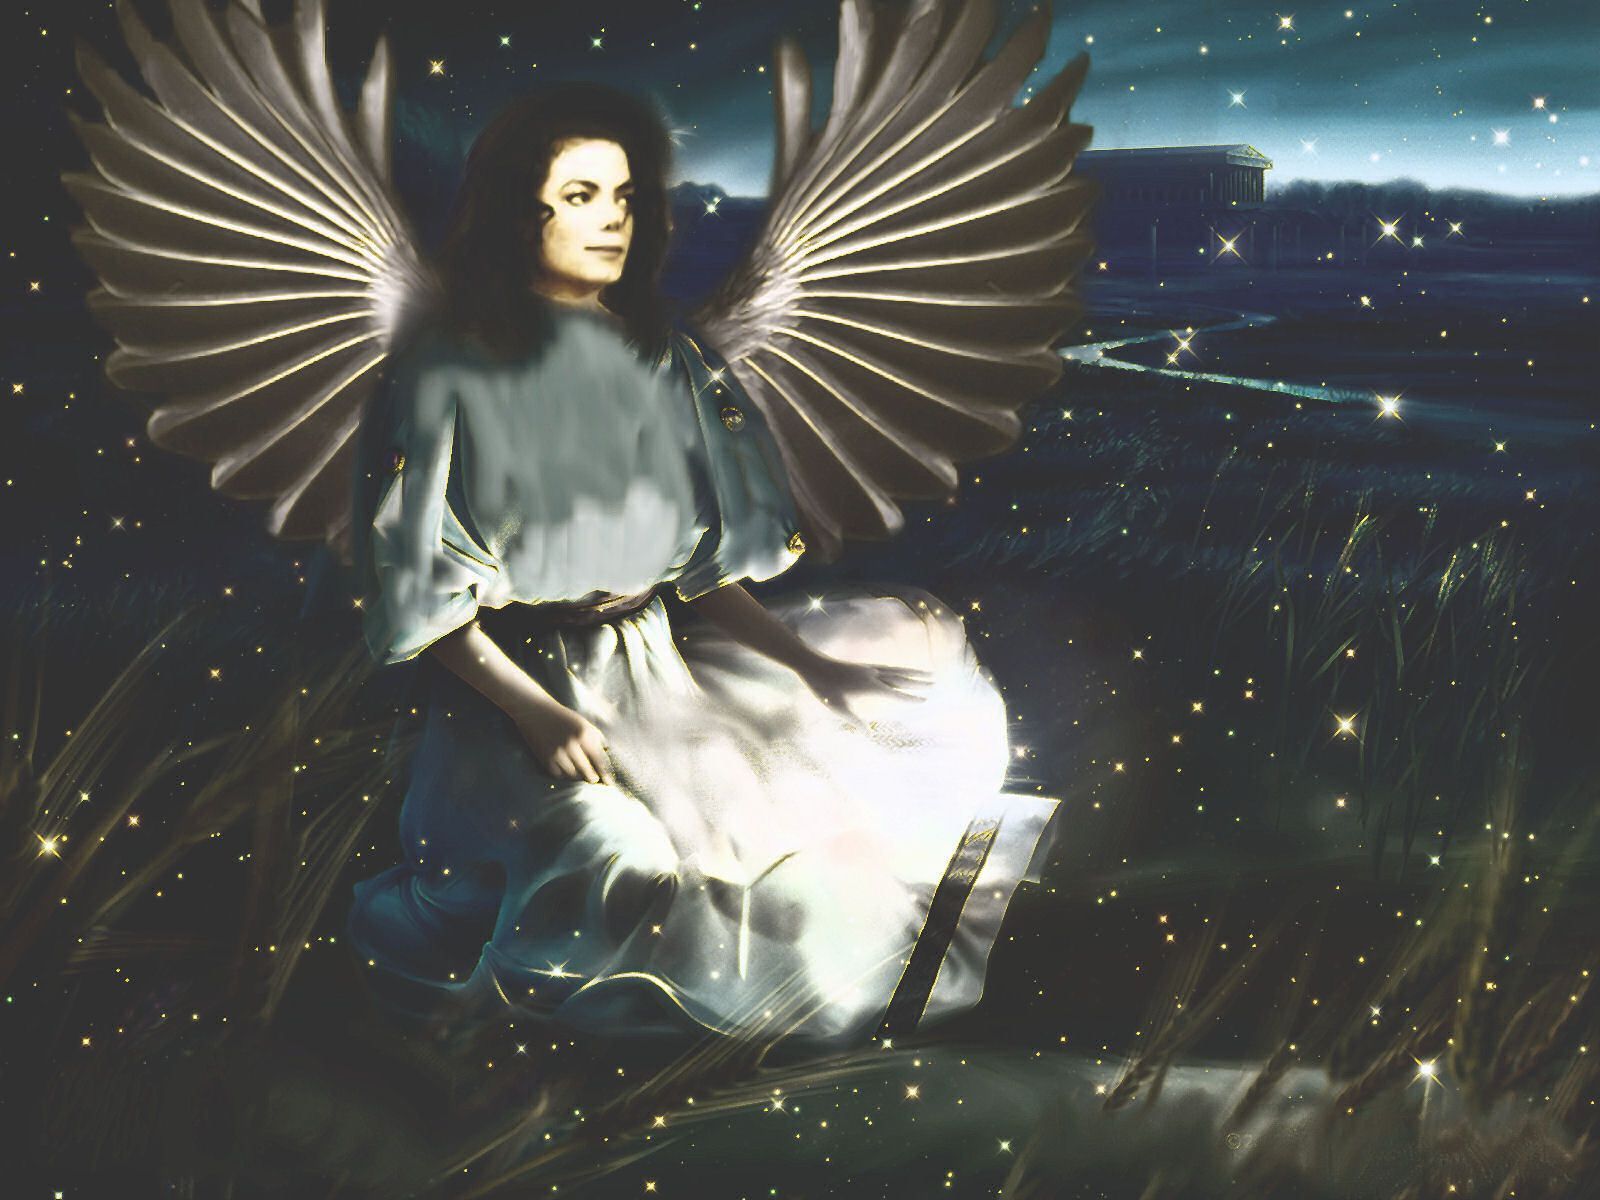 Beautiful Angel - Michael Jackson Wallpaper (14115079) - Fanpop